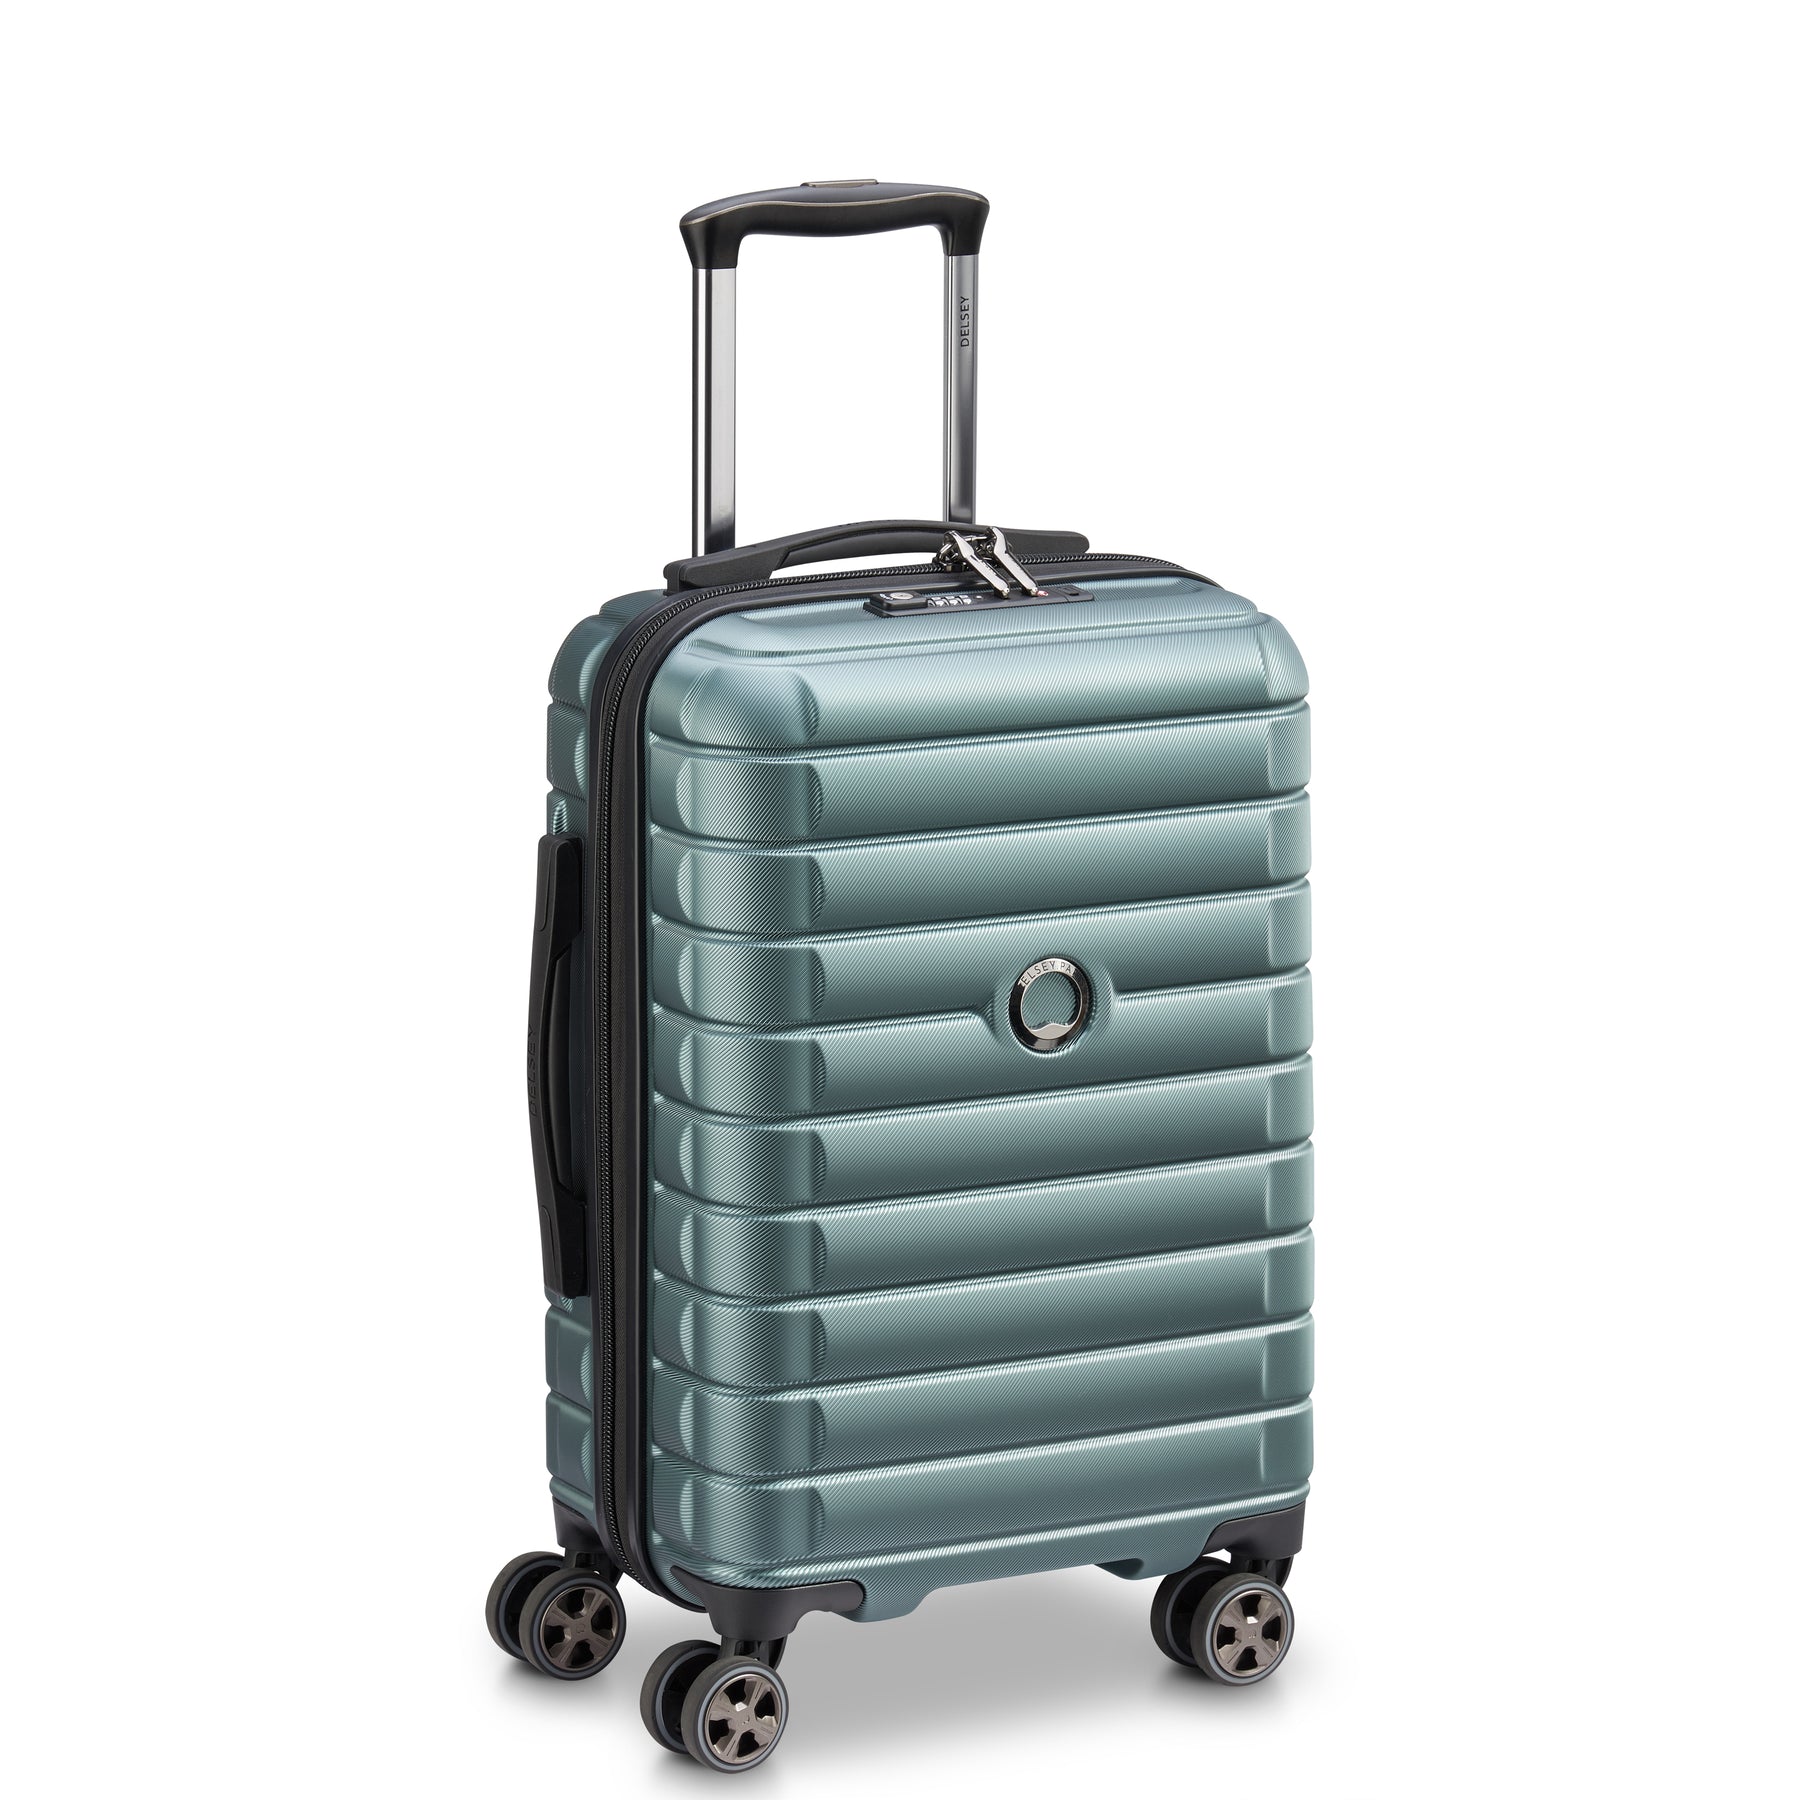 نکته خرید - قیمت روز چمدان دلسی مدل SHADOW 5.0 کد 2878801 سایز کوچک خرید